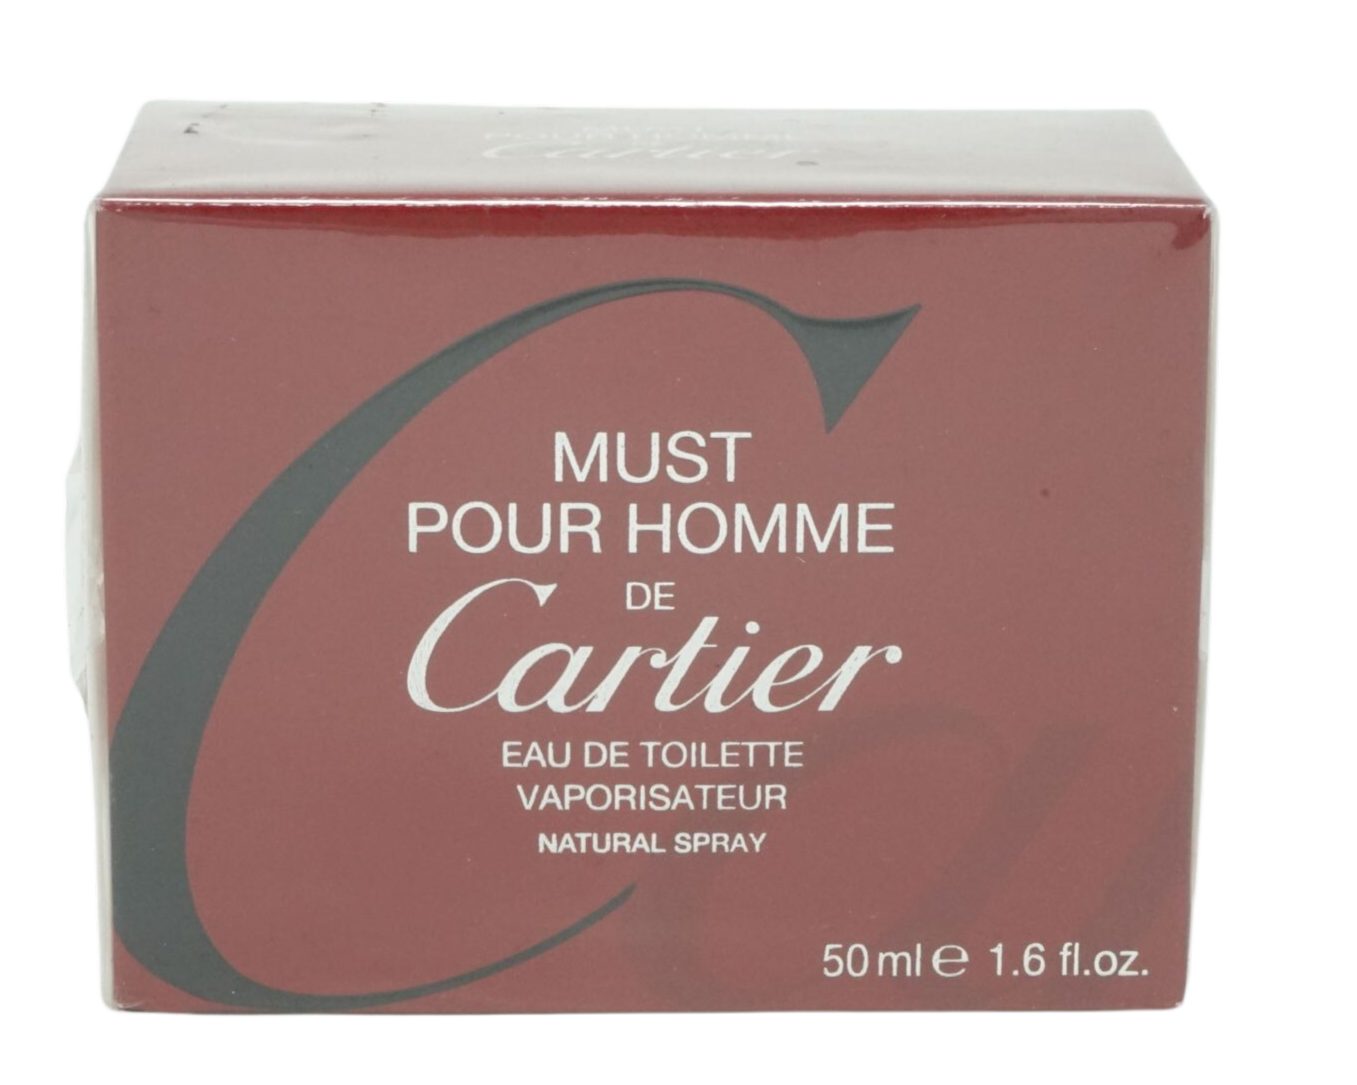 Eau de Cartier Selbstbräunungstücher Homme must Pour CARTIER de 50ml Cartier Toilette